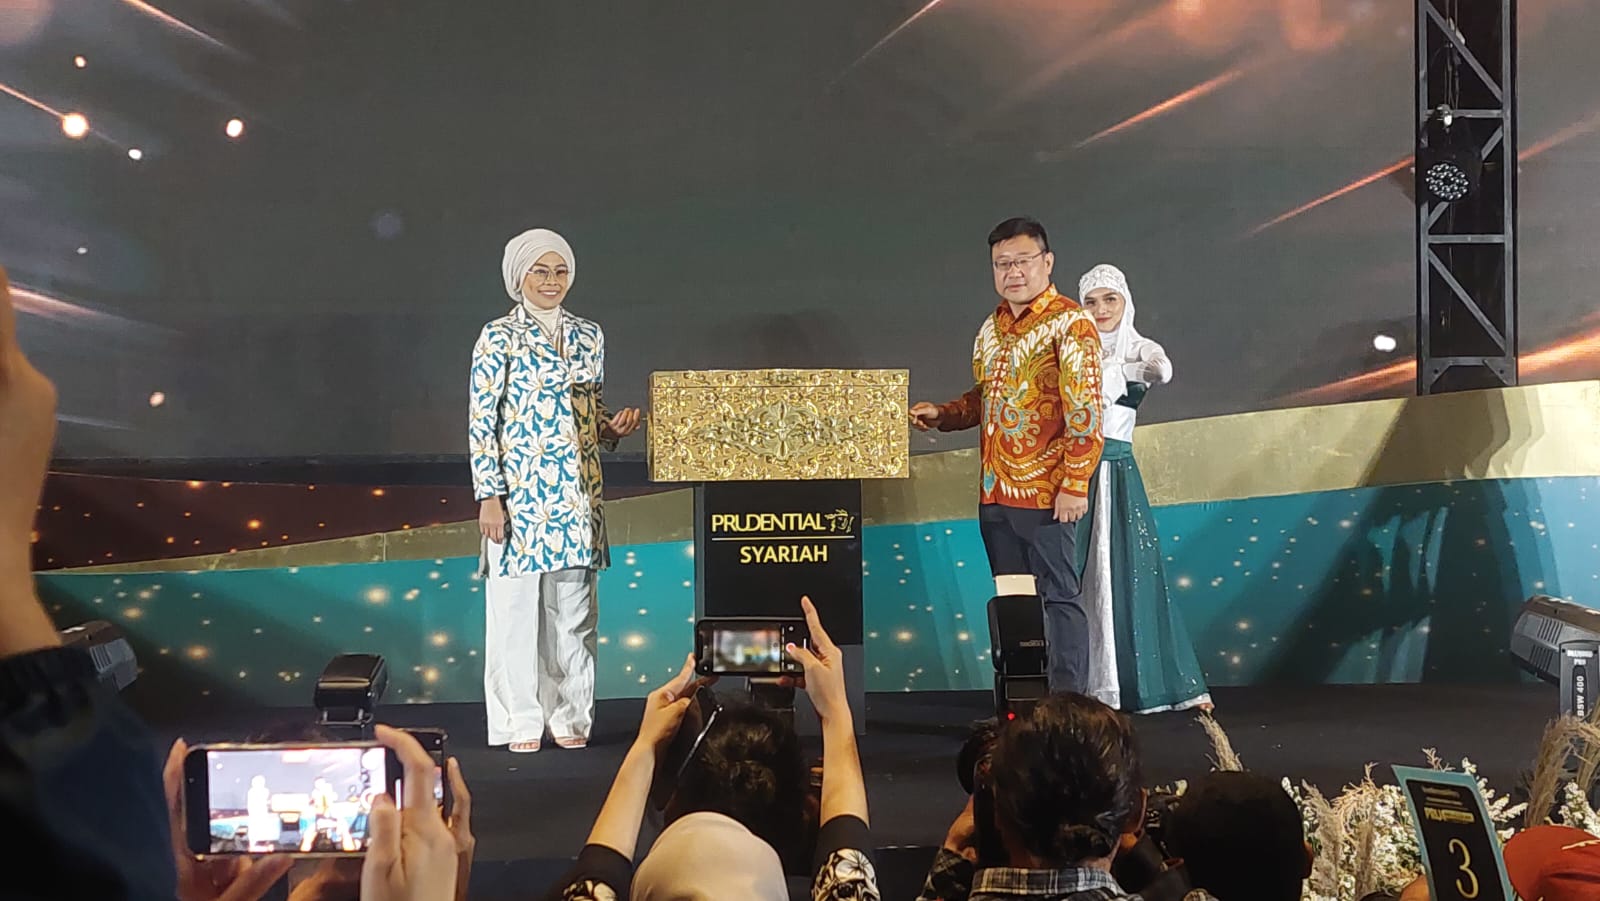 PRUAnugerah Syariah, Inovasi Syariah Pertama di Indonesia sebagai Produk Perlindungan Jiwa untuk Persiapan Warisan